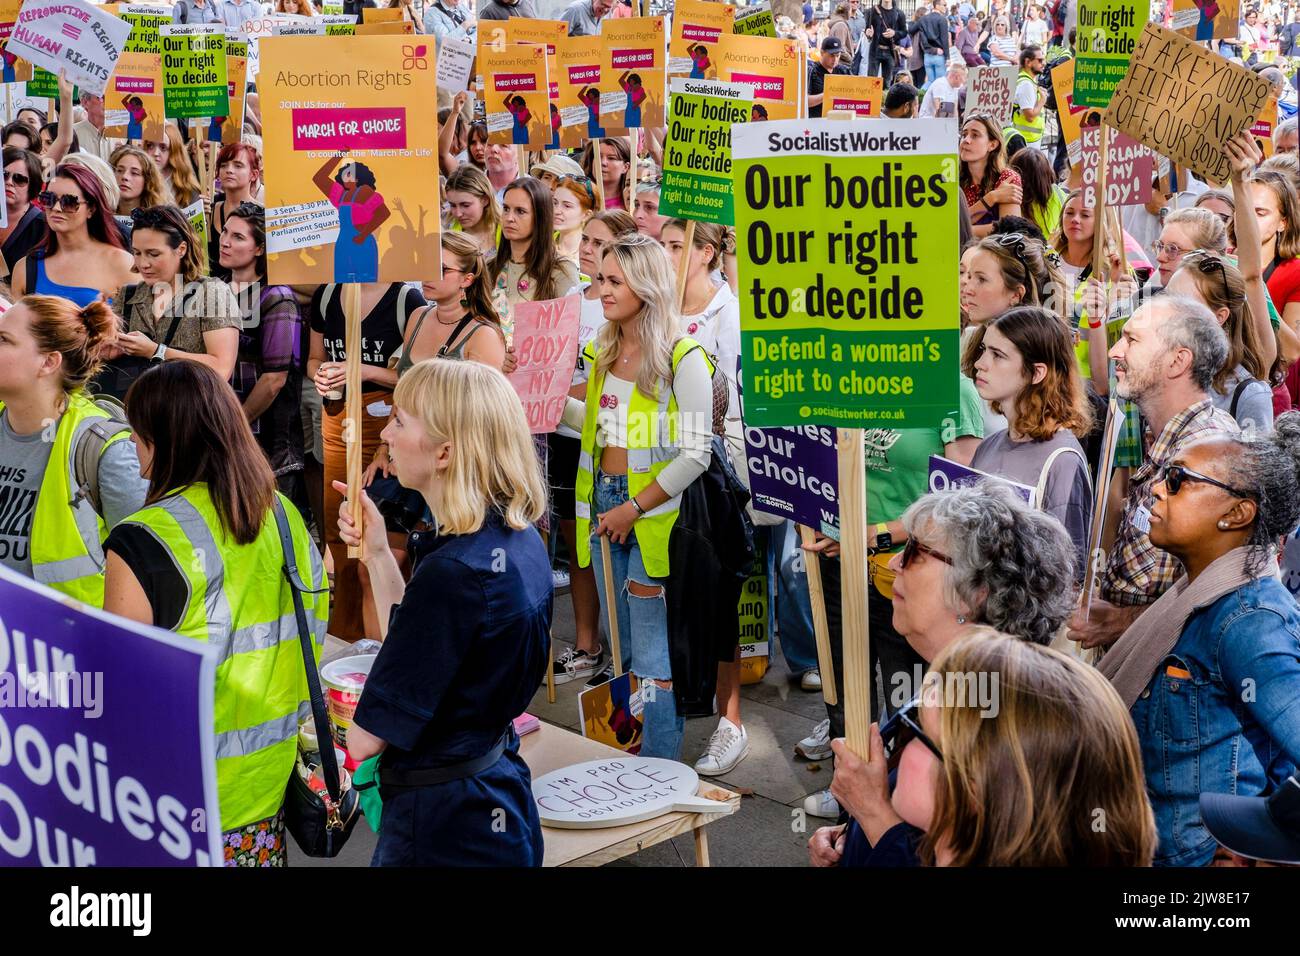 Londres, Reino Unido. 3 de septiembre de 2022. Miembros de grupos antiaborto se reúnen en Parliament Square, Westminster, después de una 'Marcha por la Vida' anual en el centro de Londres. Los activistas pro-opción del aborto también se reúnen para expresar su oposición al movimiento antiabortista. En la foto: Activistas pro-elección del aborto muestran mensajes sobre los derechos de las mujeres a elegir durante una marcha por elección en la Plaza del Parlamento en oposición a la manifestación contra el aborto. Foto de stock